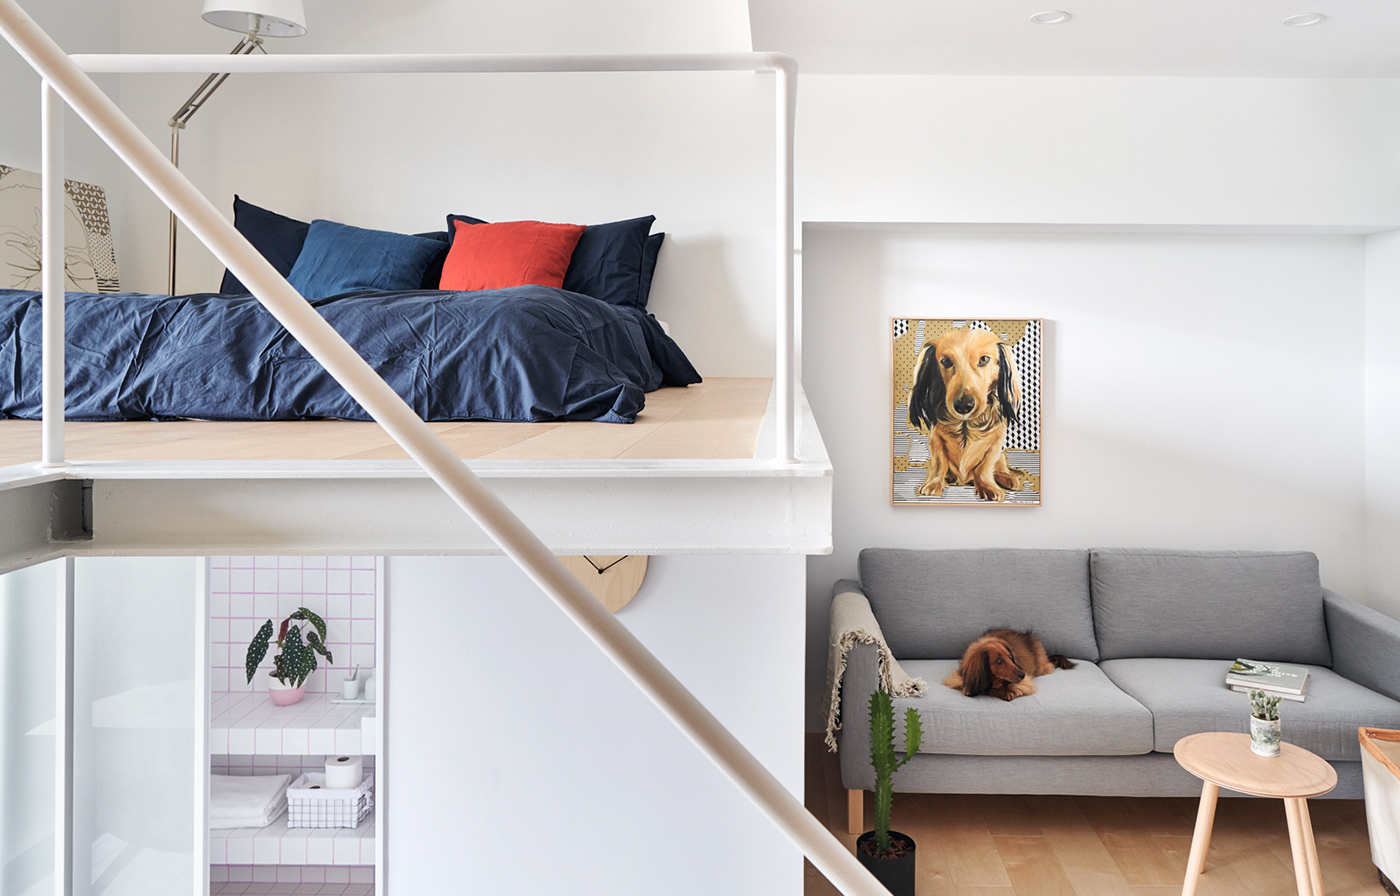 dackel dachshund dog Pet family apartment small Tiny Love taiwan